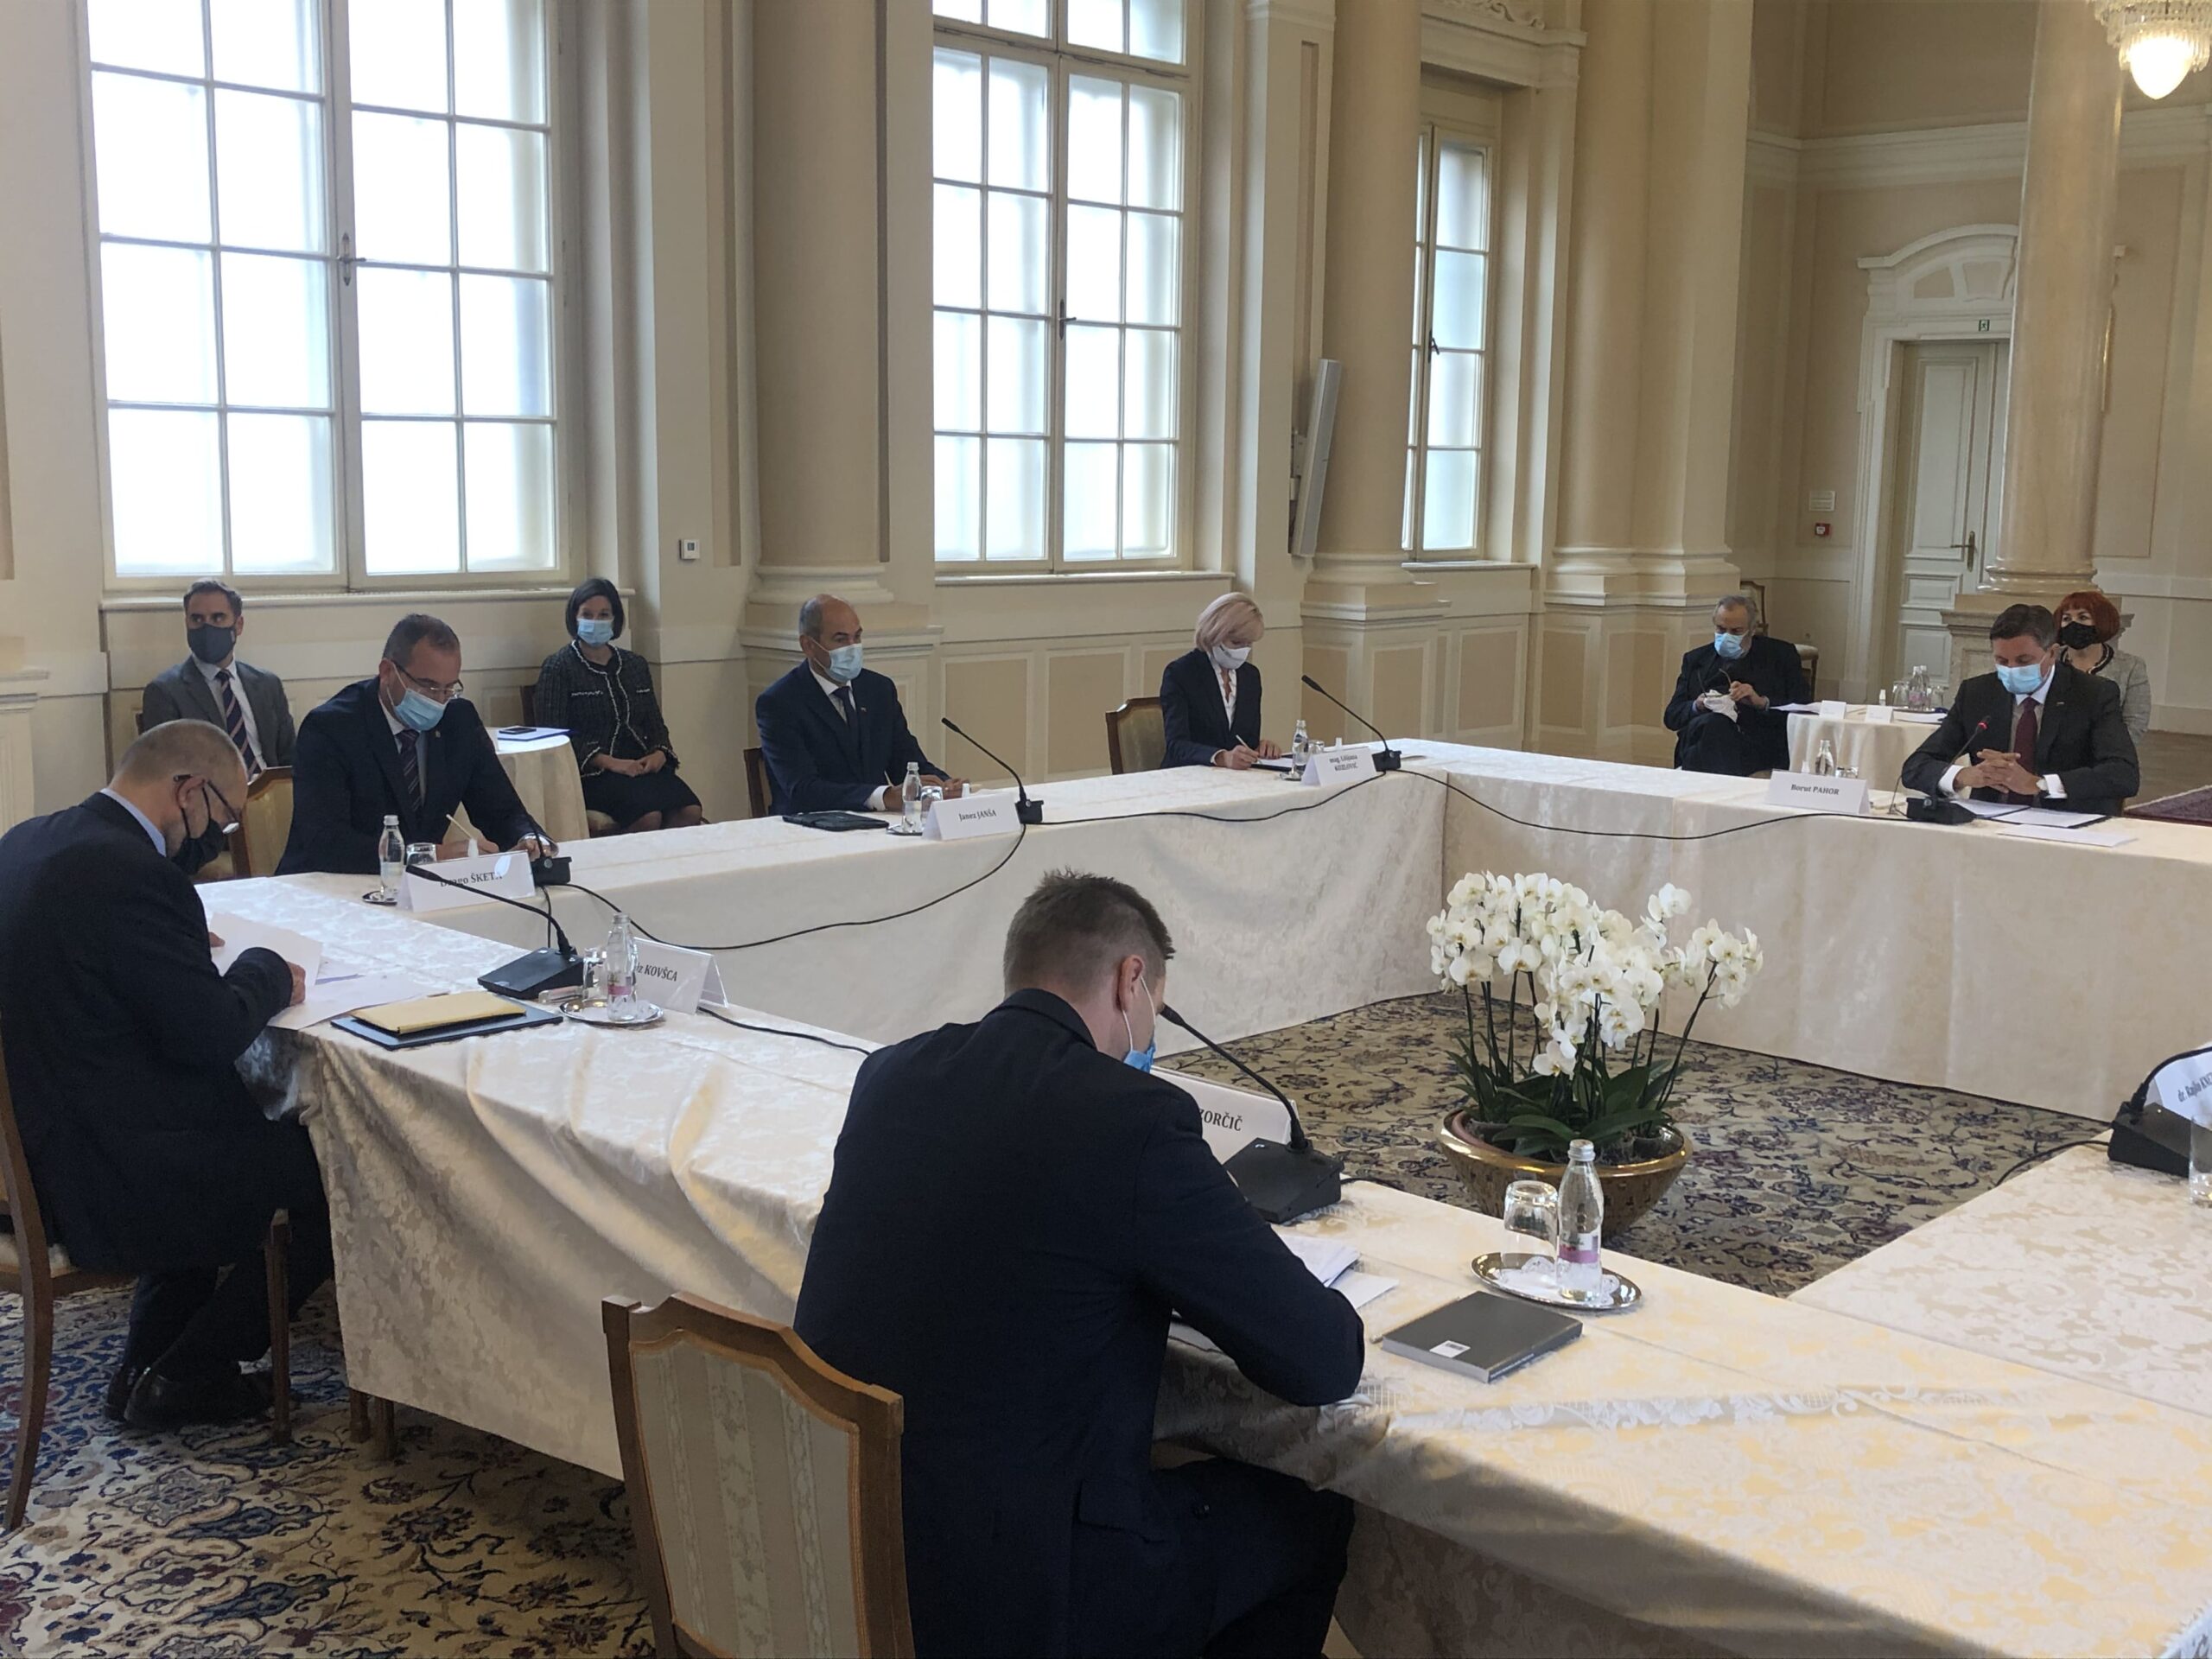 (VIDEO) Pri predsedniku Borutu Pahorju na Erjavčevi srečanje najvišjih predstavnikov treh vej oblasti, zakonodajne, izvršilne in sodne